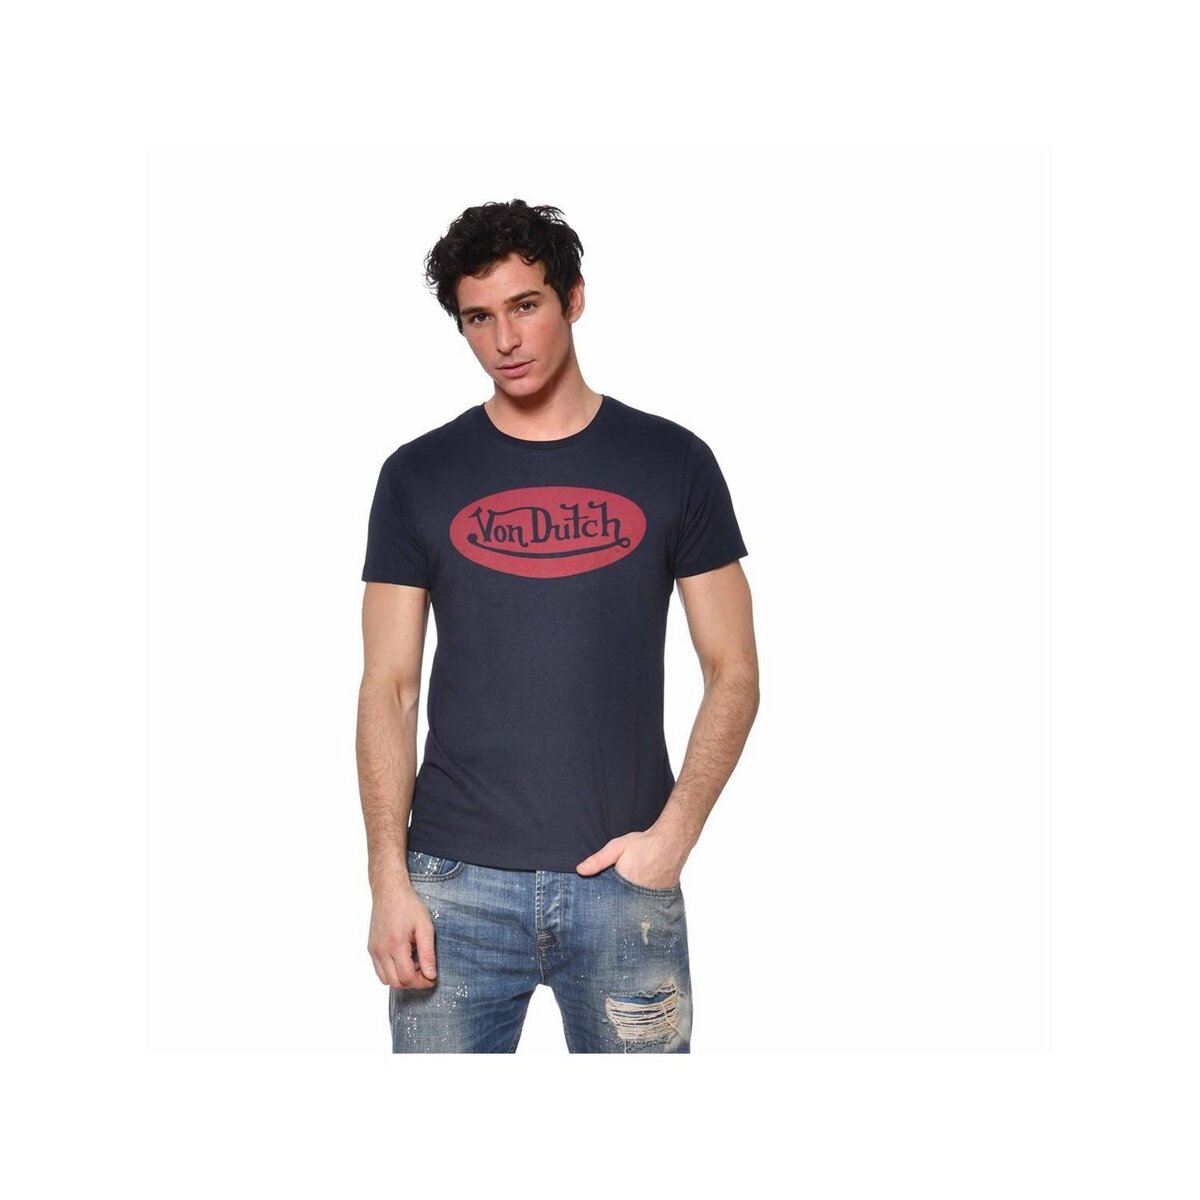 VONDUTCH T-Shirt homme coton Front